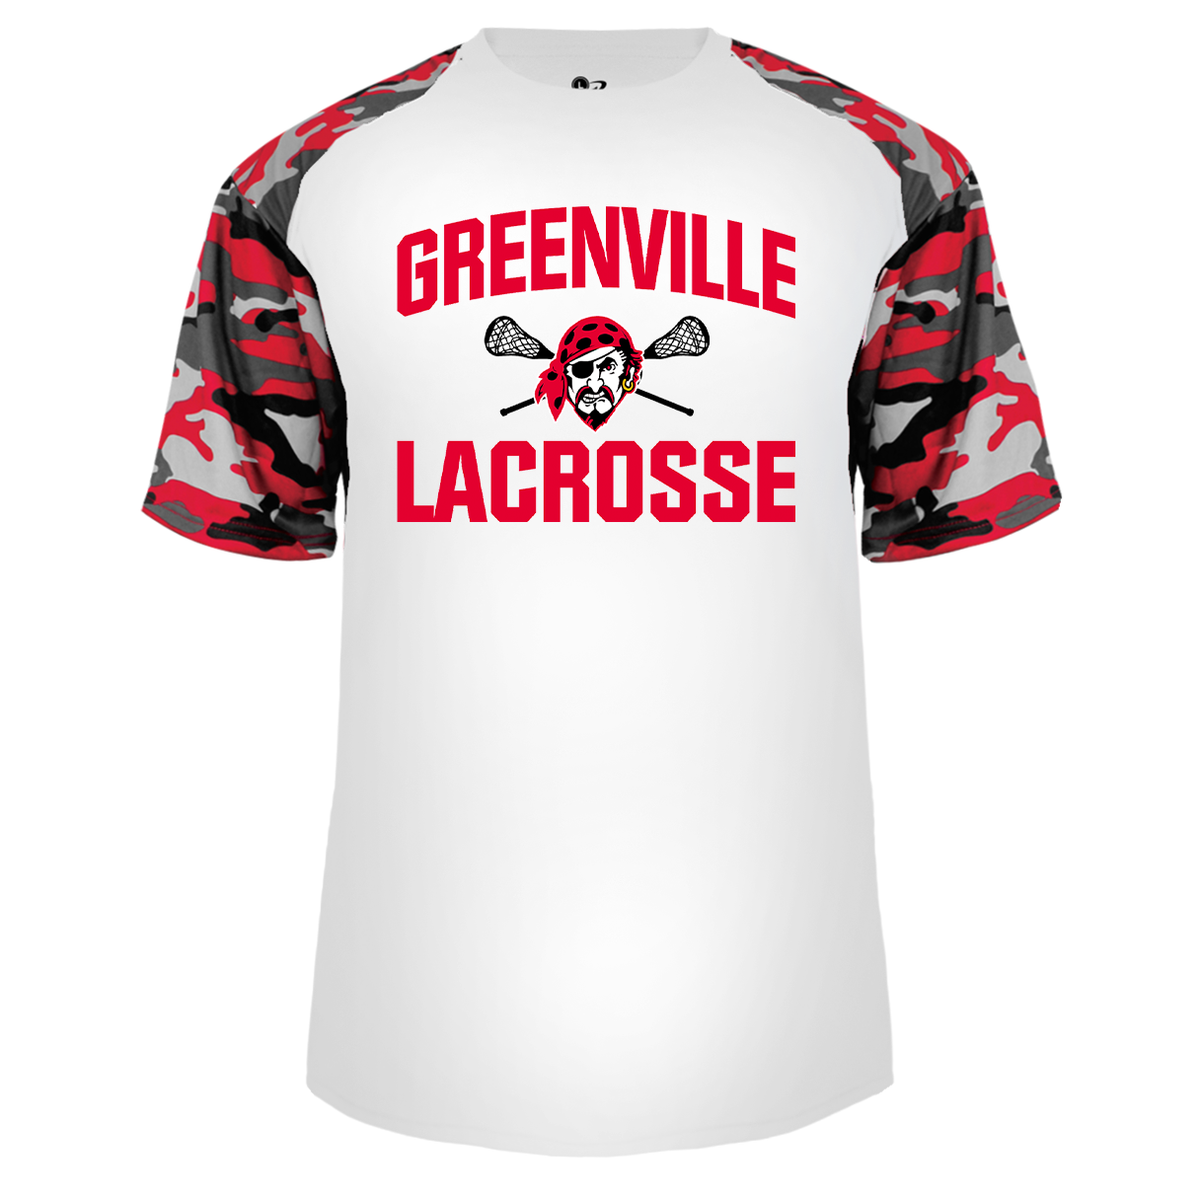 Greenville Lacrosse Camo Sport tee